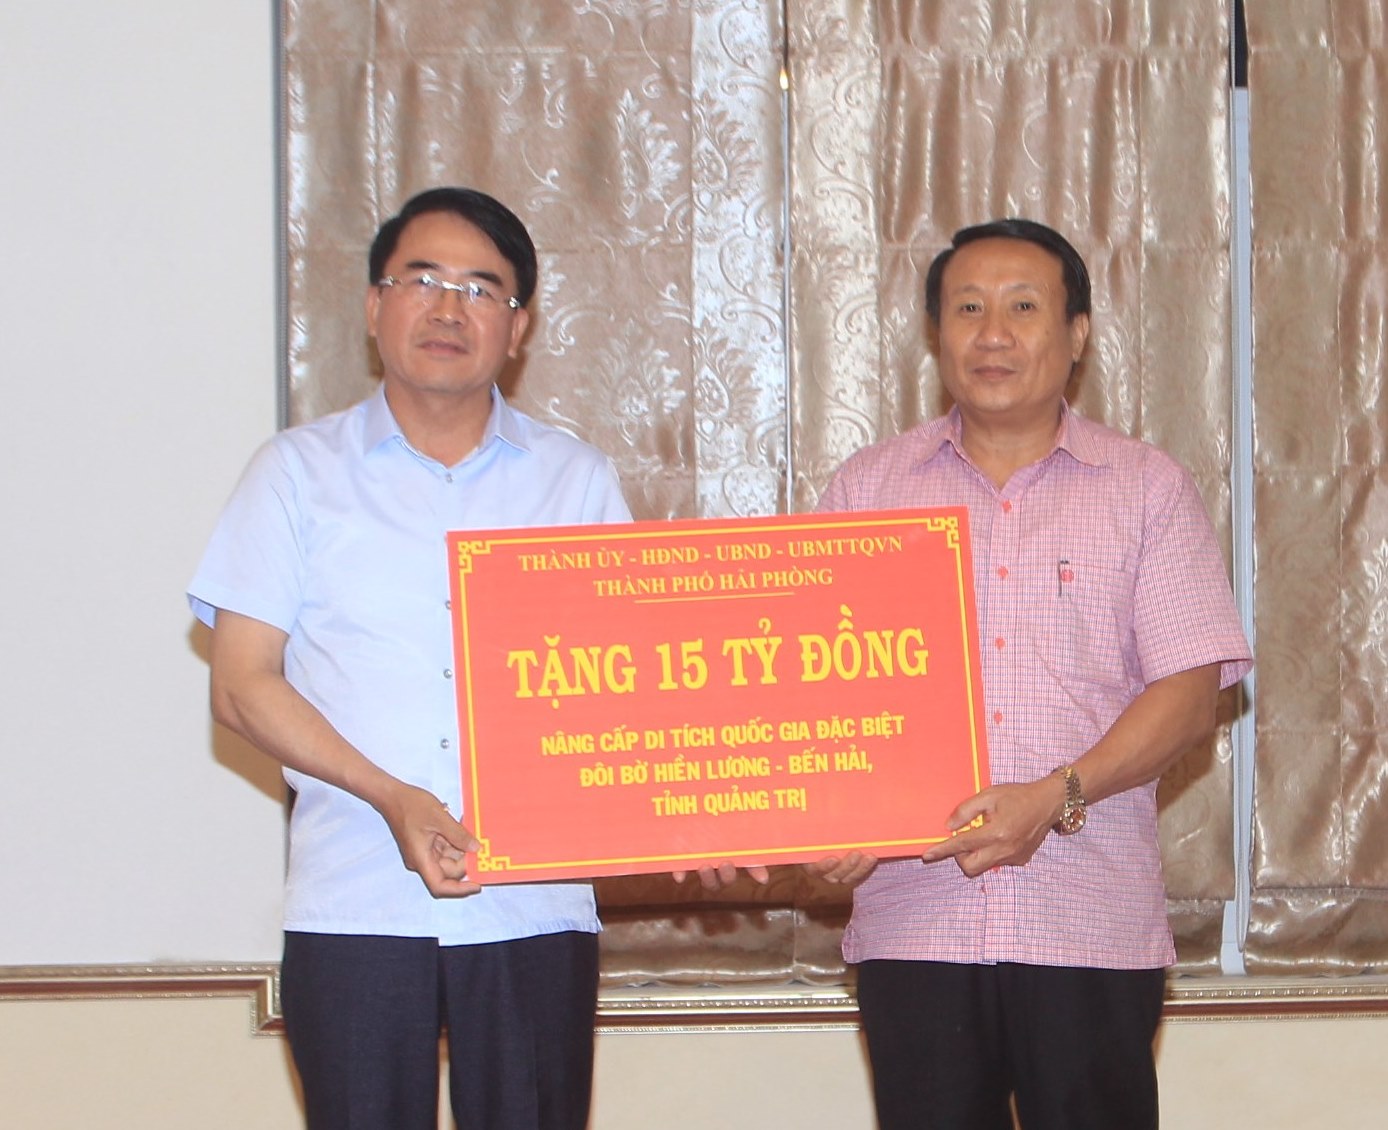 Lãnh đạo thành phố Hải Phòng trao kinh phí hỗ trợ cho lãnh đạo UBND tỉnh Quảng Trị.